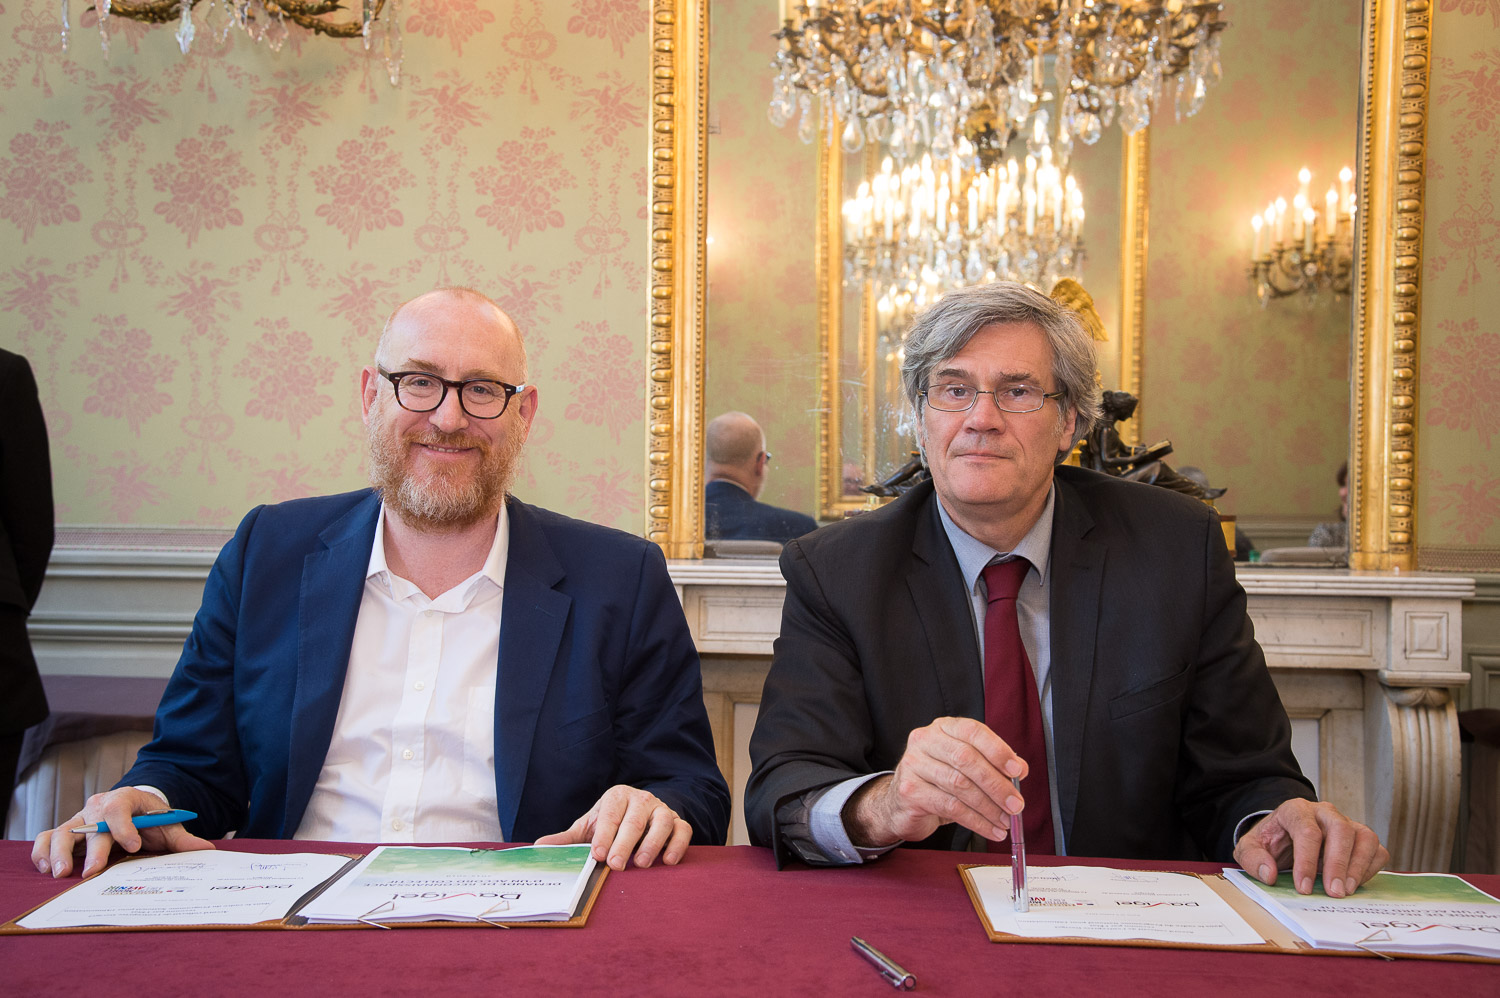 Stéphane Le FOLL, Ministre de l’agriculture, de l’agroalimentaire et de la forêt et Jacques DERONZIER, Président Directeur Général de Davigel en train de signer.